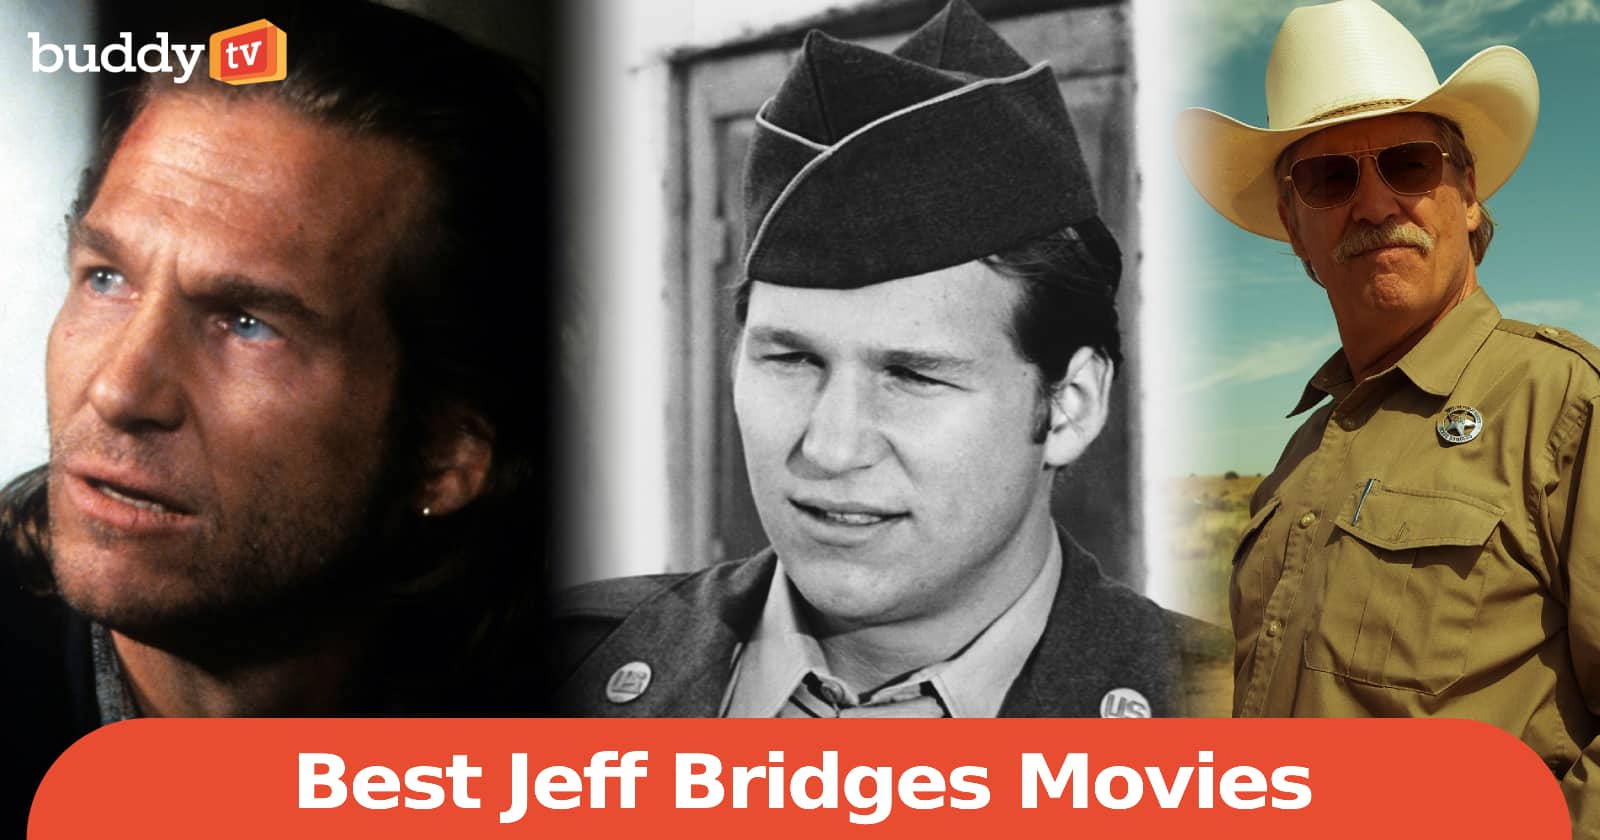 10 Best Jeff Bridges Movies, Ranked by Viewers